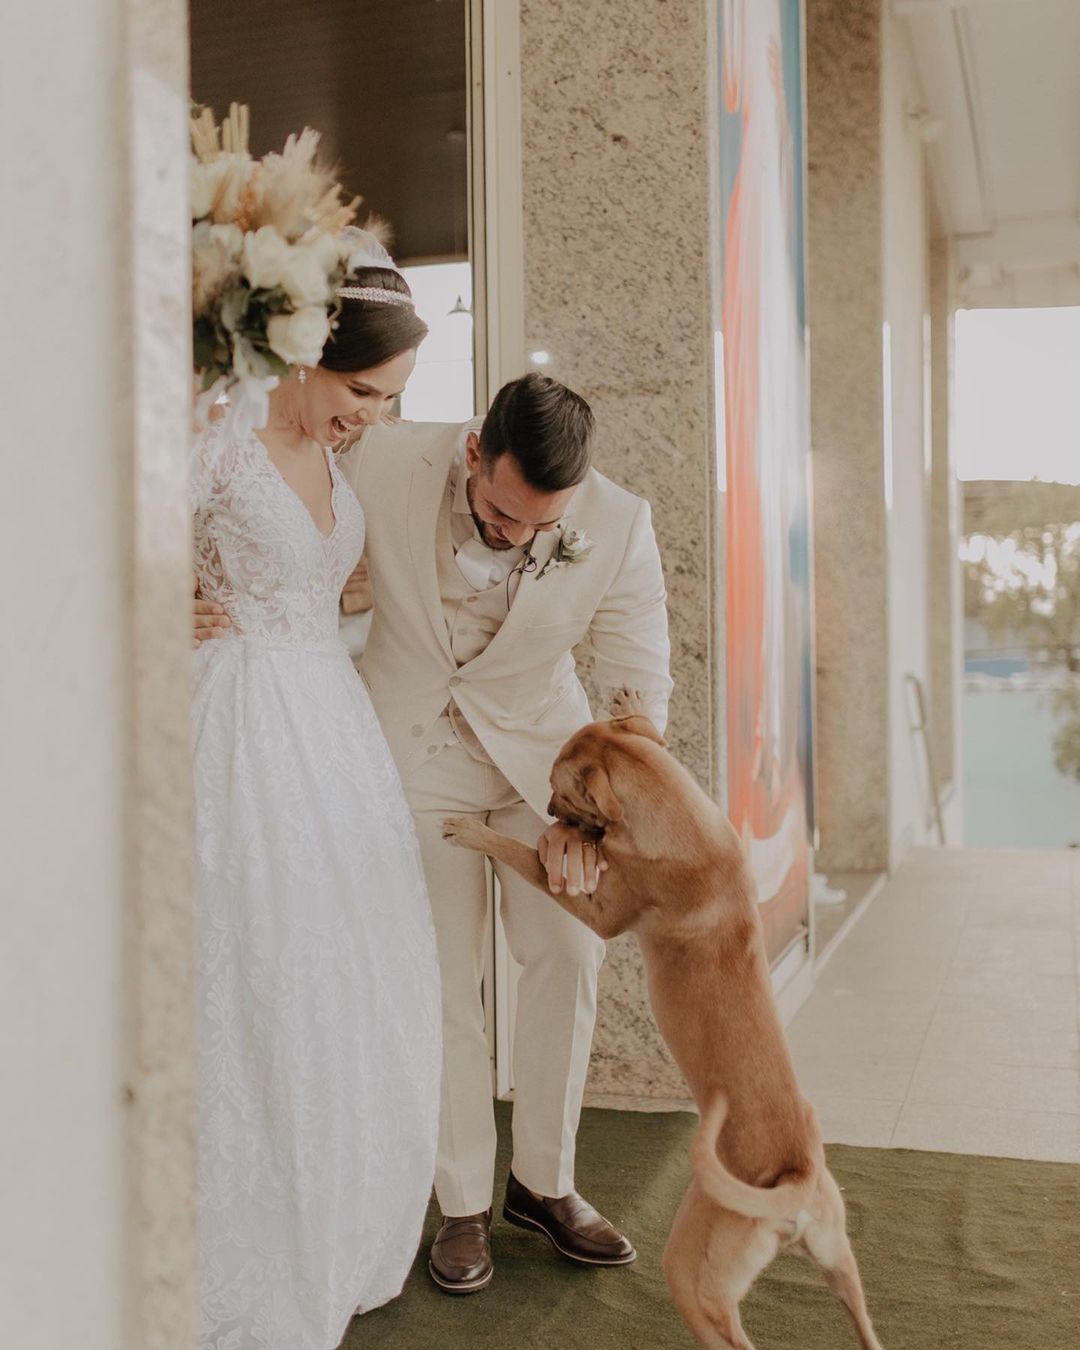 Stray Dog greeting newlyweds